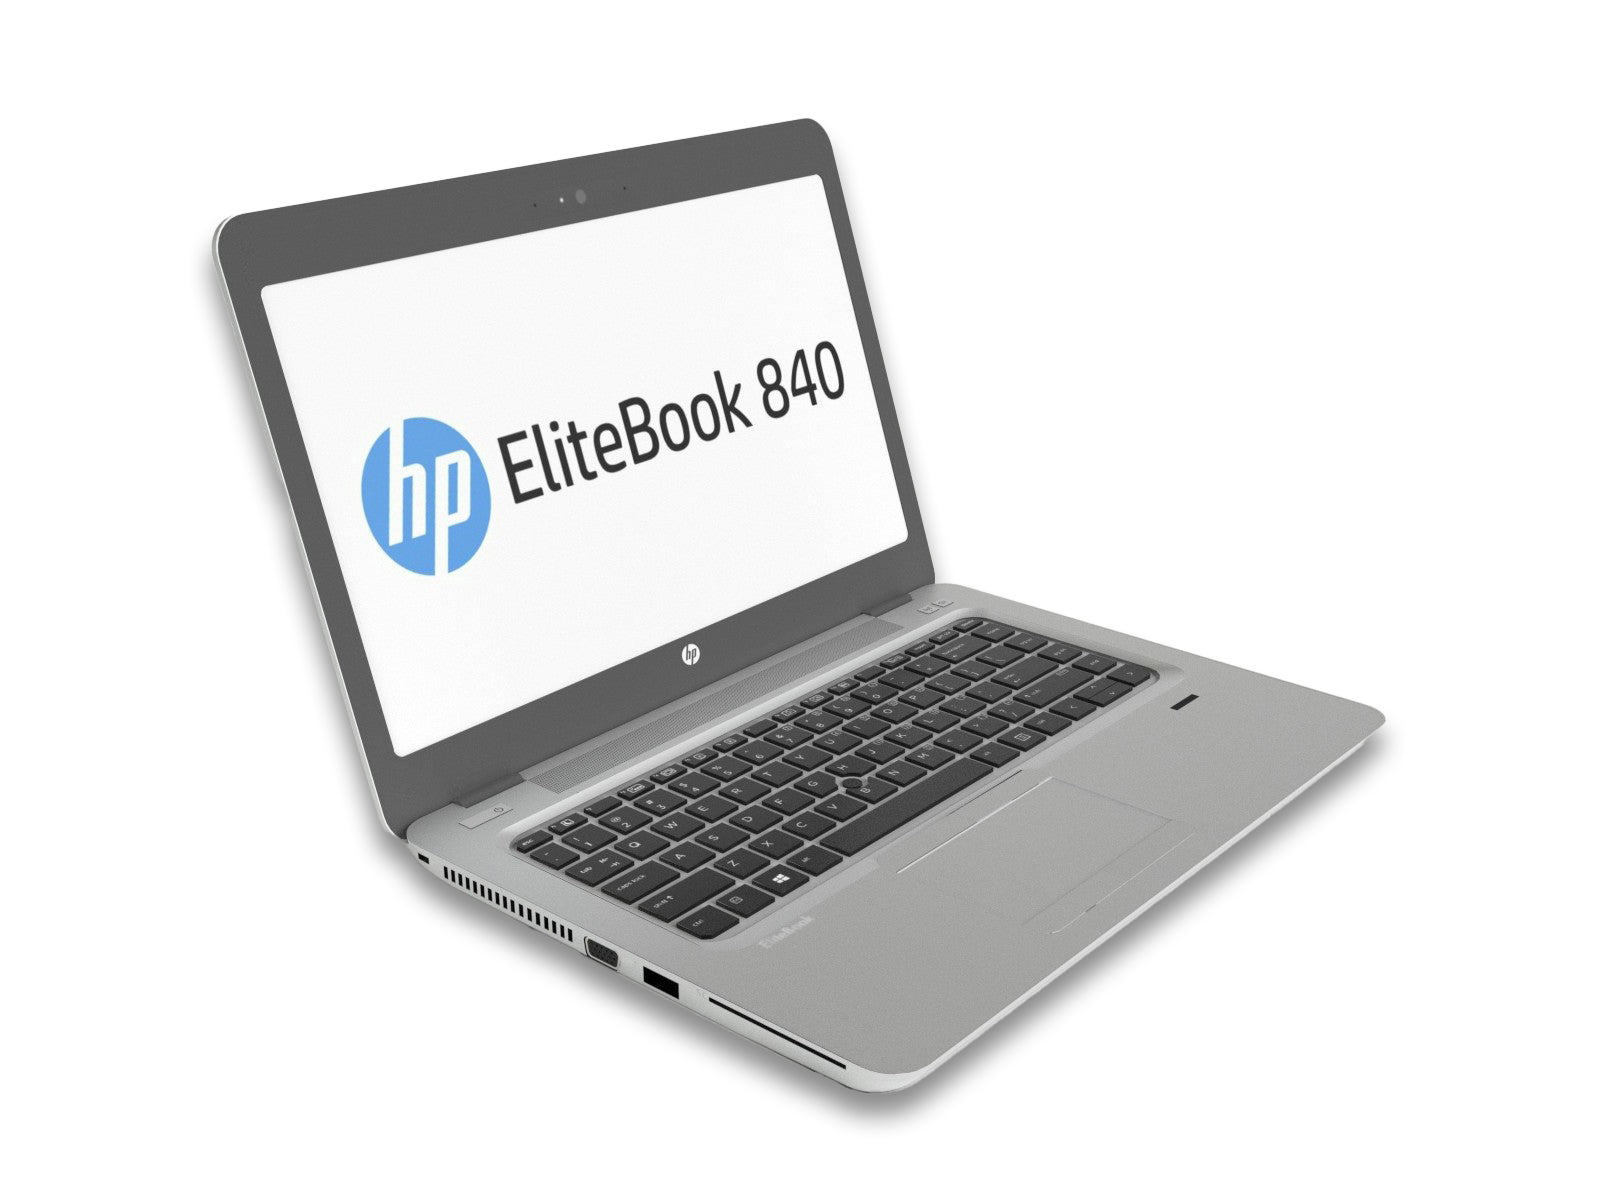 HP EliteBook 840 G3 Notebook Side View